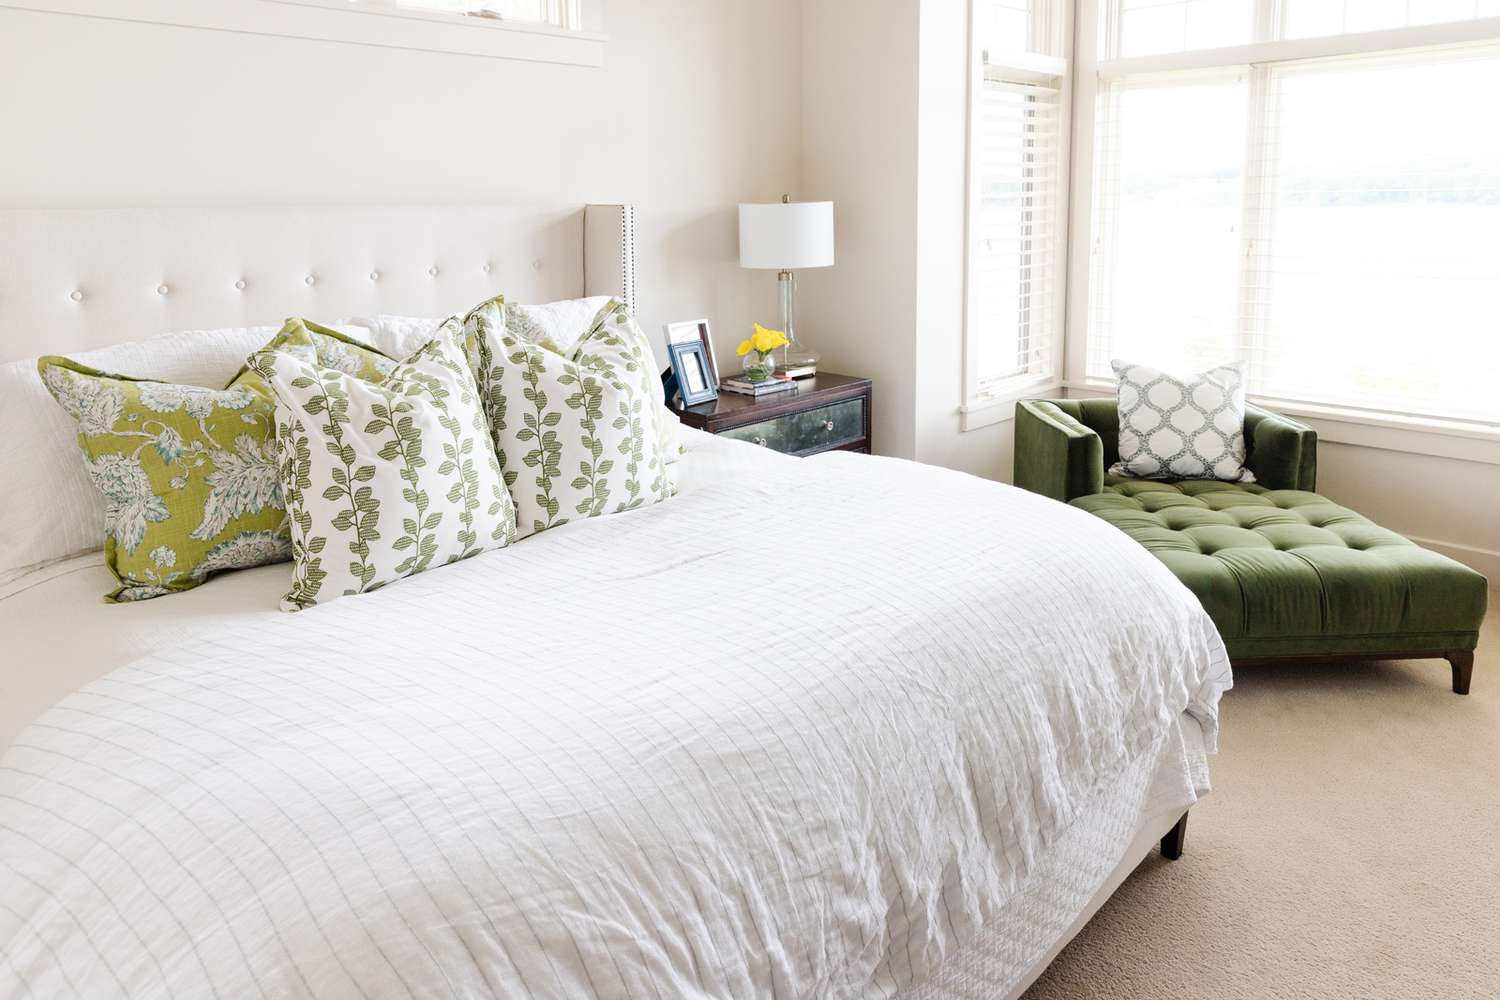 Helles weißes Schlafzimmer mit olivgrünen Farbtönen.